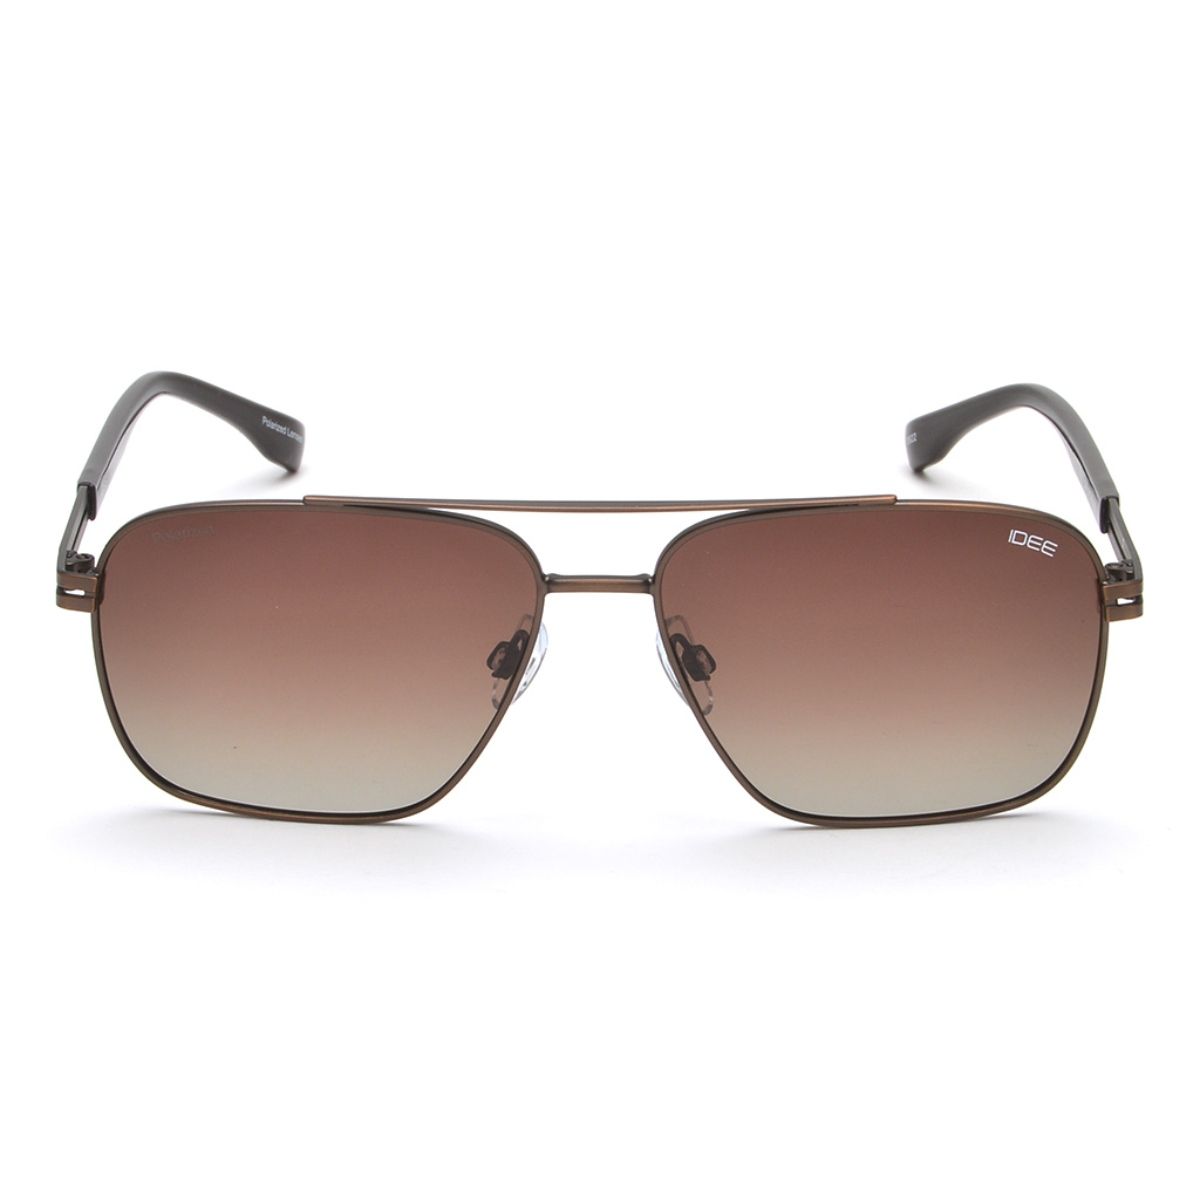 Buy IDEE Grey Cat Eye Sunglasses for Women at Best Price @ Tata CLiQ